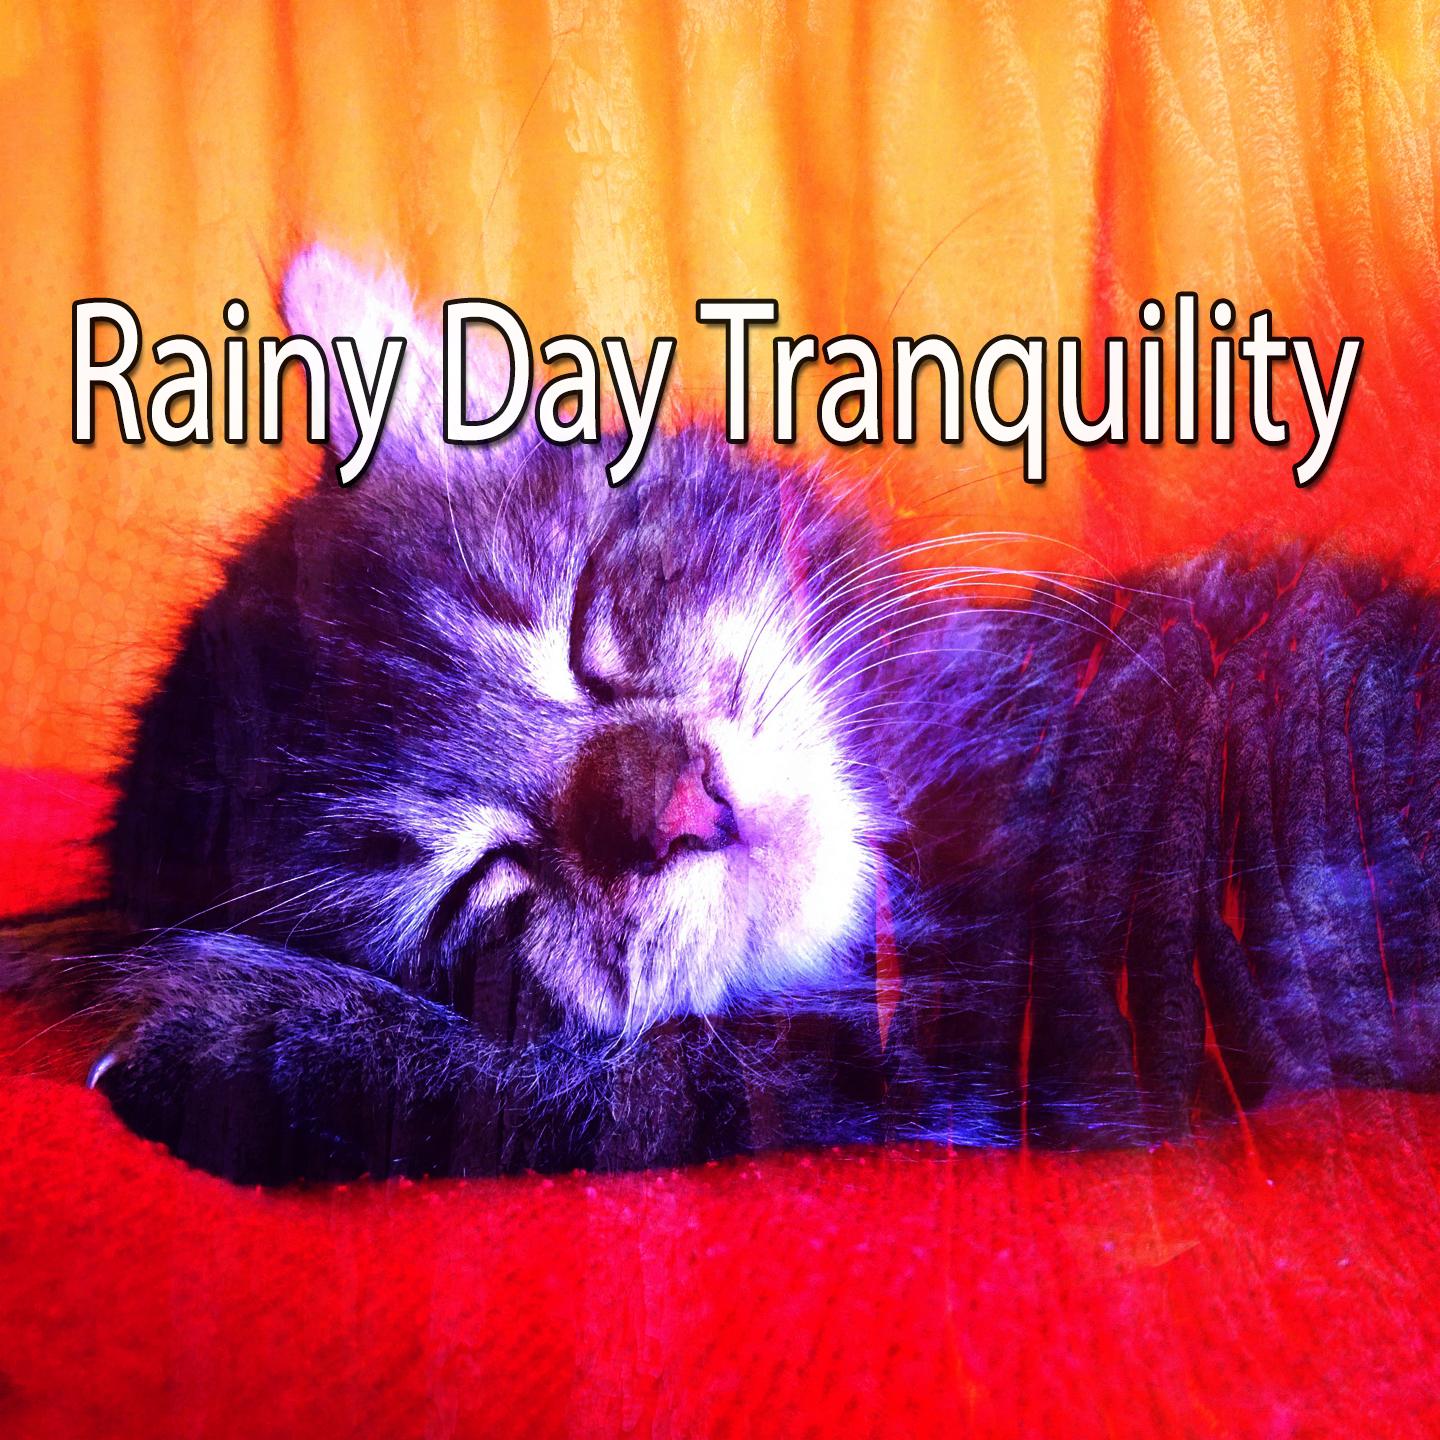 Rainy Day Tranquility